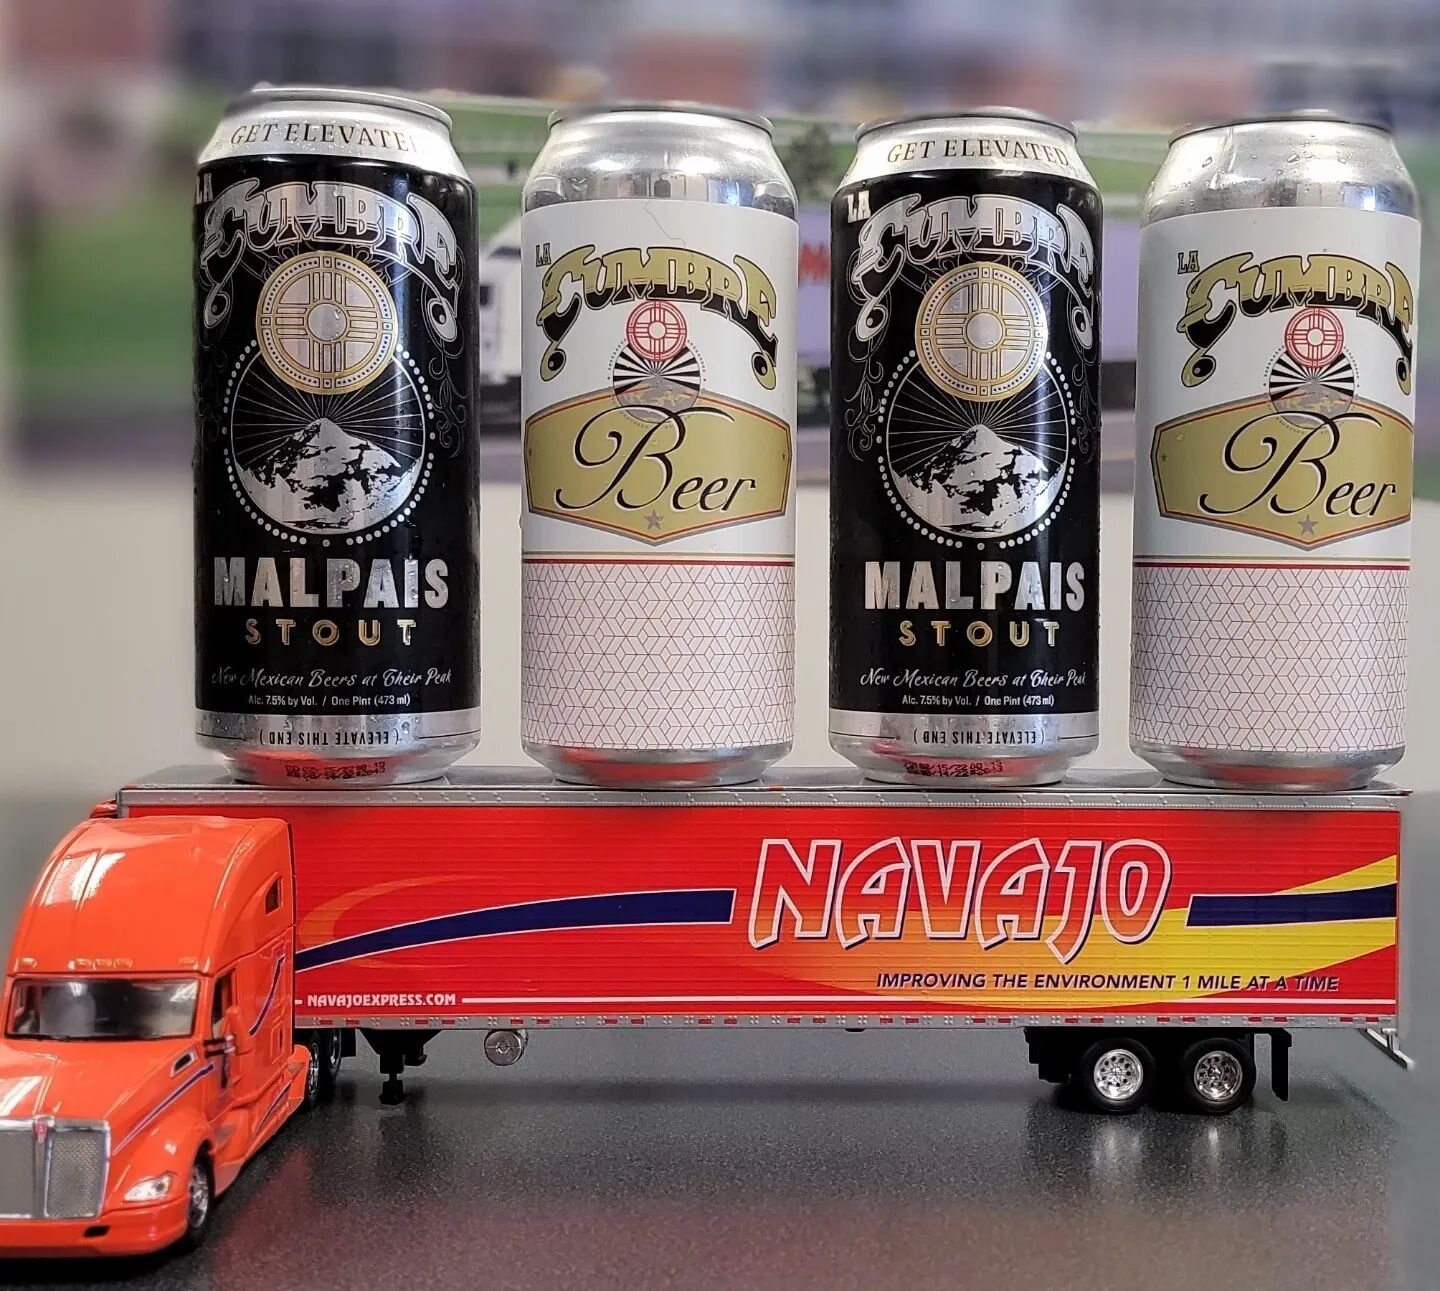 Happy #InternationalBeerDay 
Cheers to @lacumbrebrewing

#NavajoExpressInc #LaCumbreBrewing #Beer #Brewery #Beerstagram #Beerlover #Trucker #TruckerLife #TruckersofInstagram #NewMexico #IPA #NMBeer #ABQBeer #CraftBeer